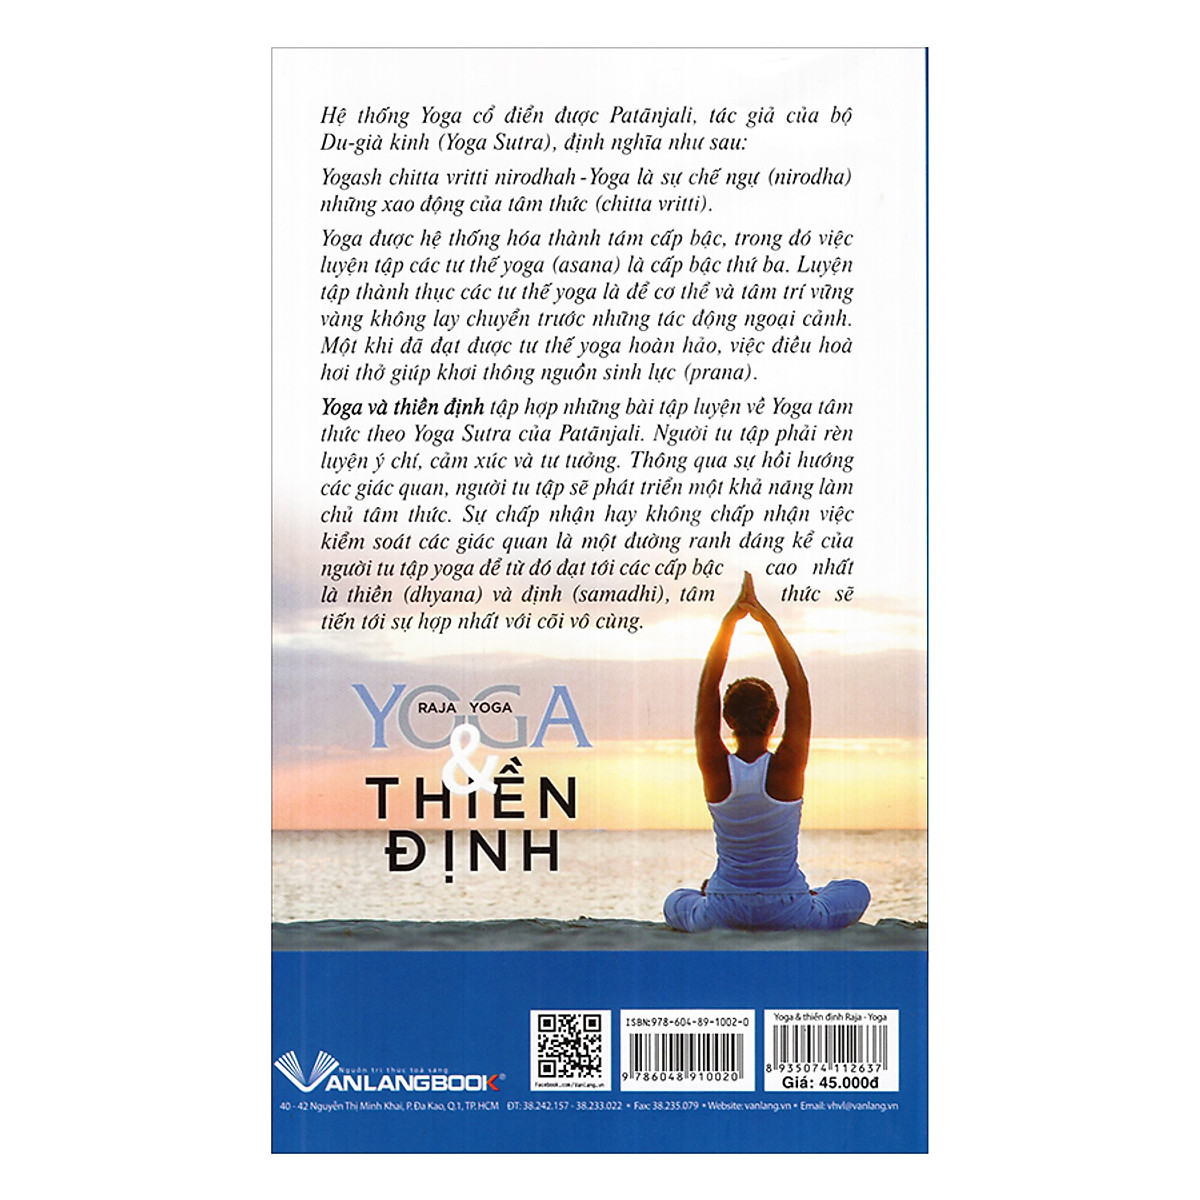 Yoga Và Thiền Định